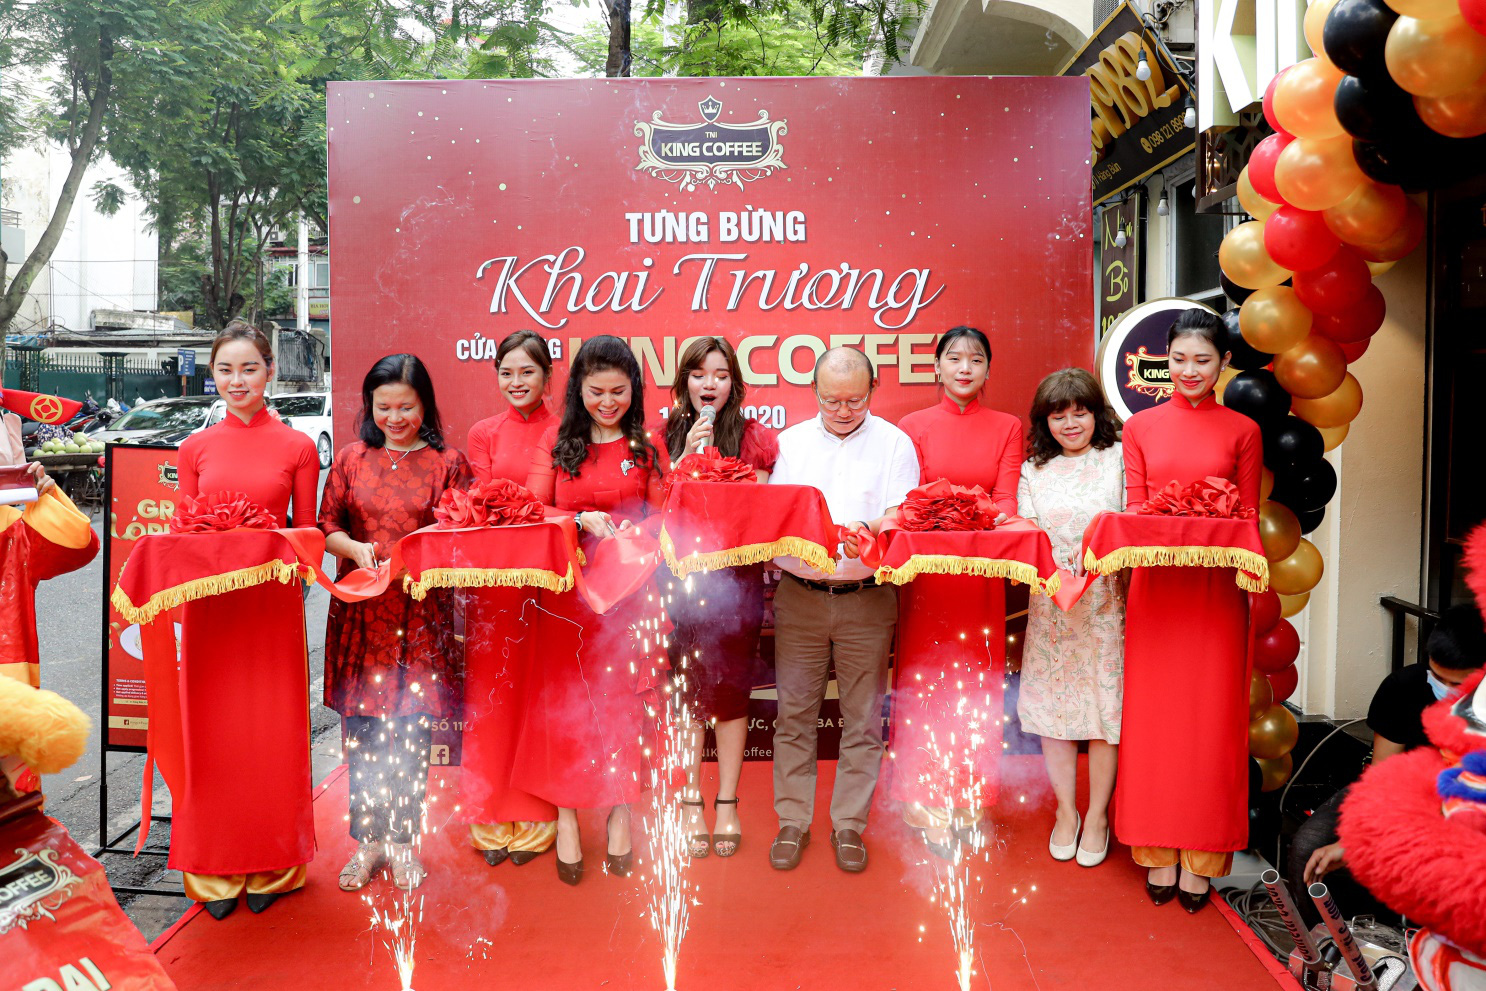 Nếu bạn đang muốn tìm kiếm một trải nghiệm cà phê độc đáo với hương vị riêng của Hà Nội thì hãy ghé thăm Kingcoffee – một thương hiệu cà phê đình đám tại Hà Nội. Hãy xem ảnh Kingcoffee để thưởng thức một ly cà phê tuyệt vời nhưng không kém phần sang trọng.